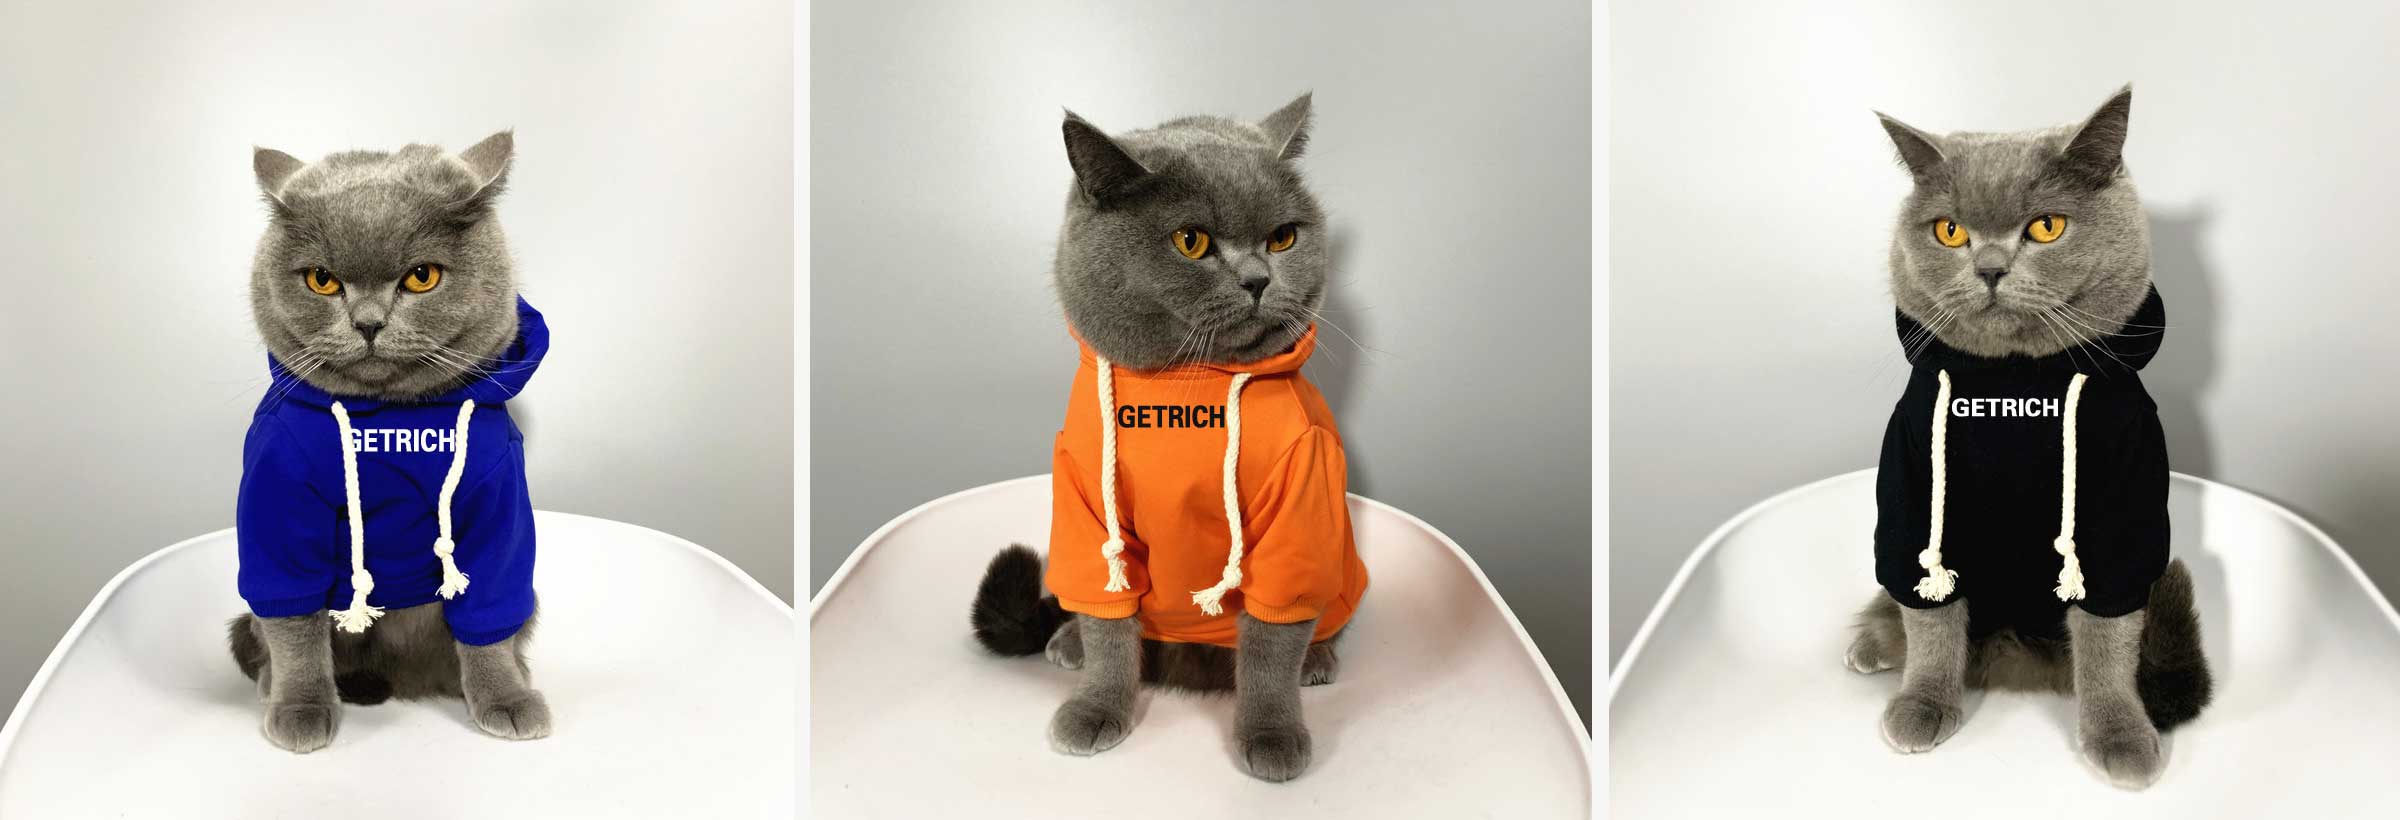 ubrania - odzież dla kotów